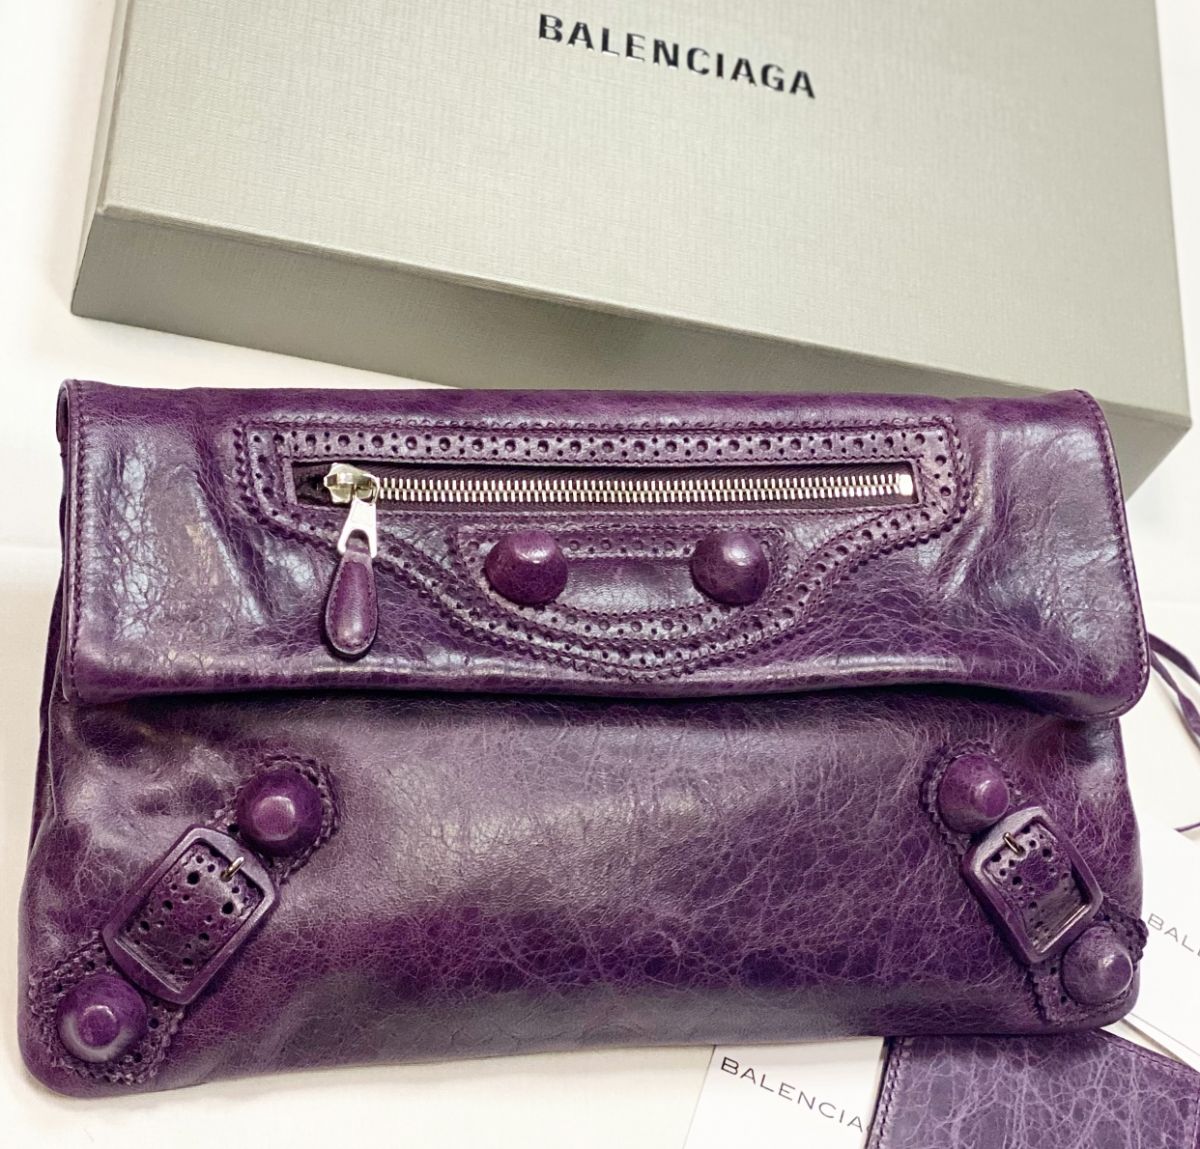 Клатч Balenciaga размер 30/18 цена 12 308 руб / карточки / 